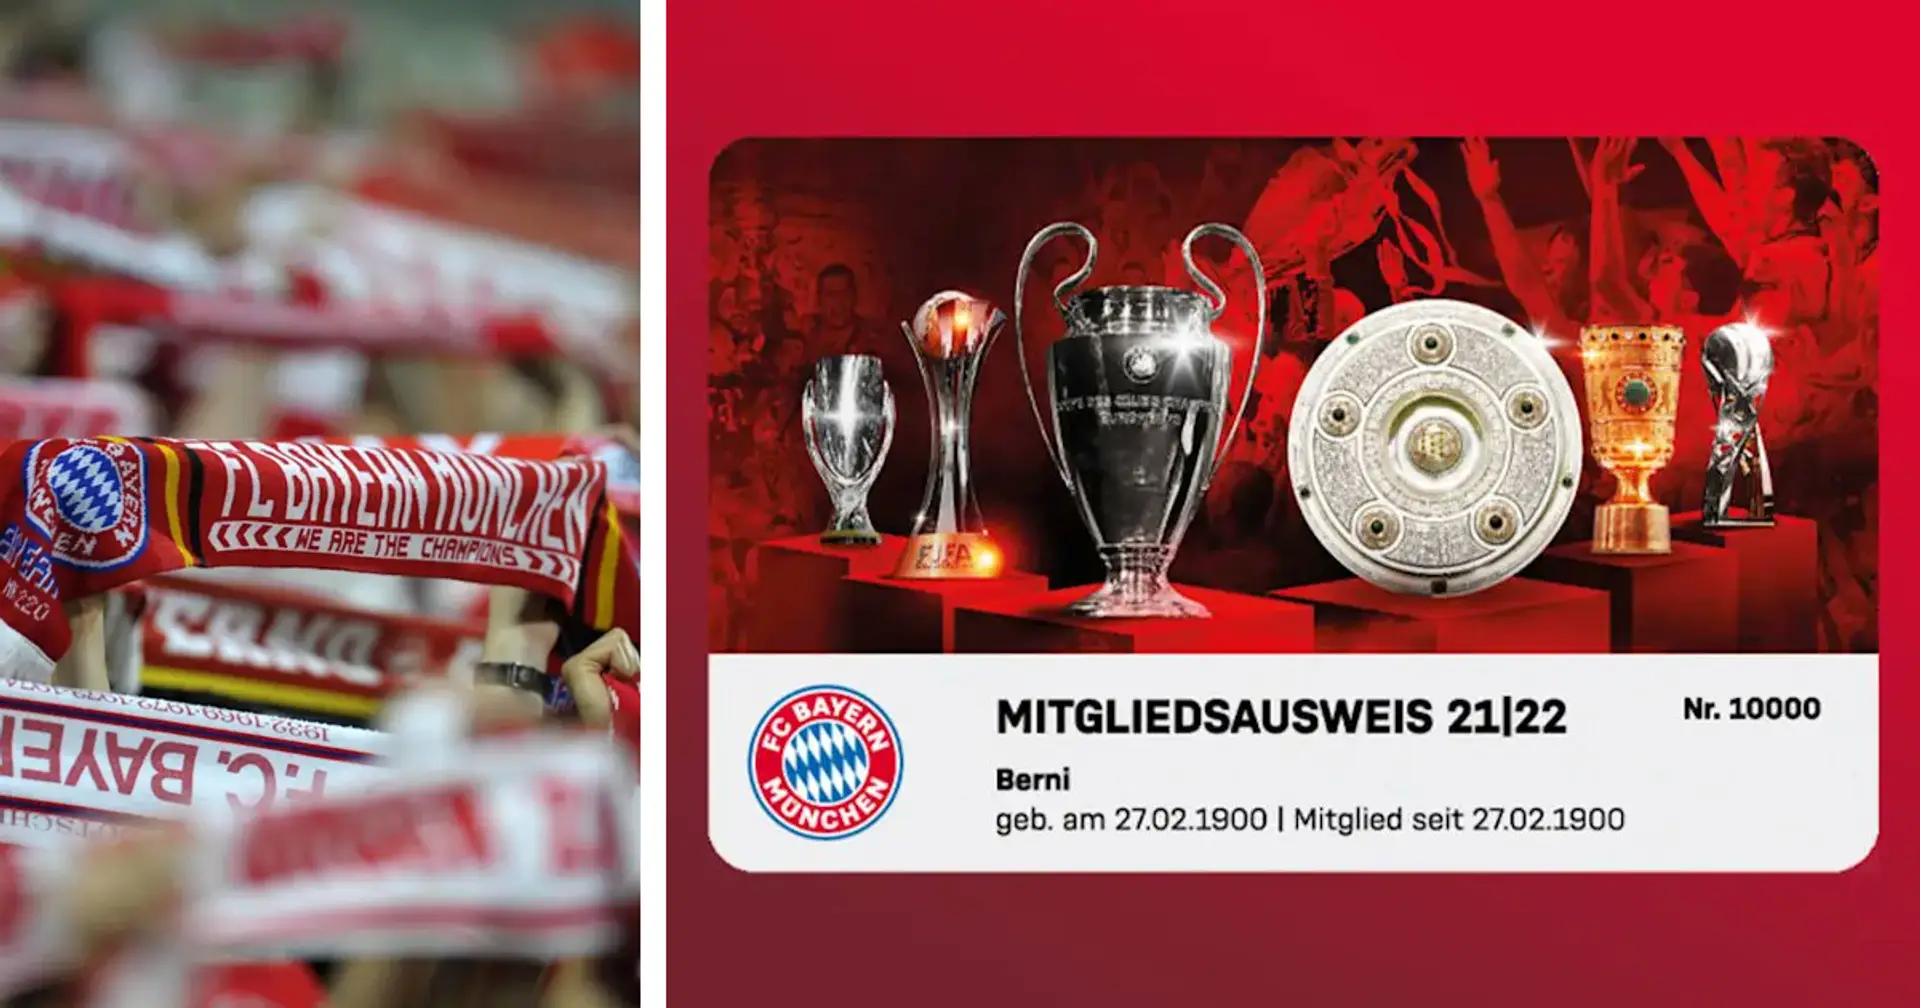 Sextuple verewigt: FC Bayern enthüllt Design des Mitgliedsausweises für die nächste Saison